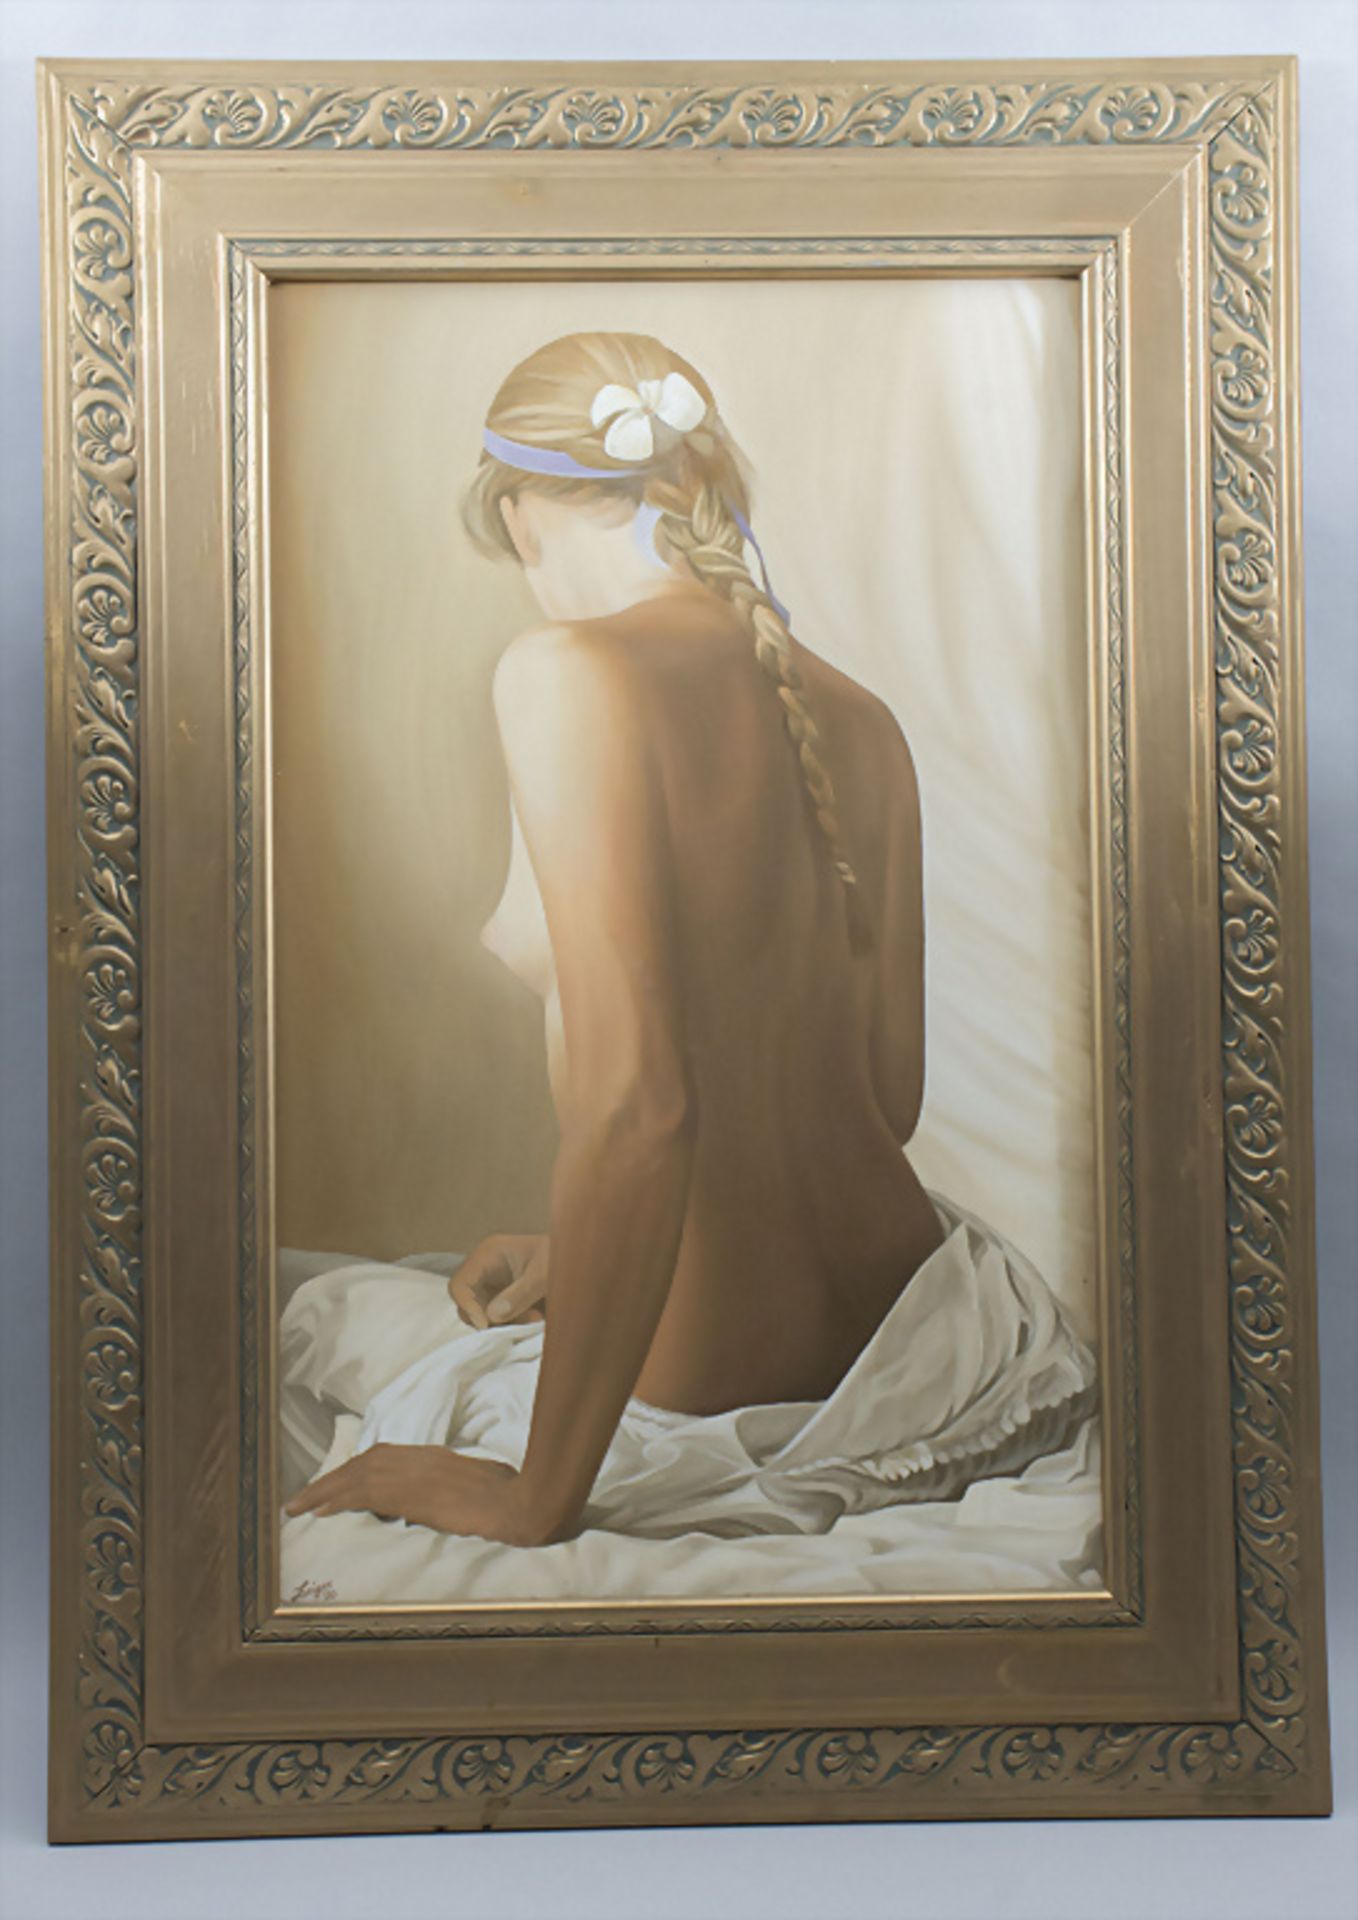 Michael Zeiger (21. Jh.), 'Sitzender weiblicher Akt' / 'A sitting female nude', 2000 - Image 2 of 6